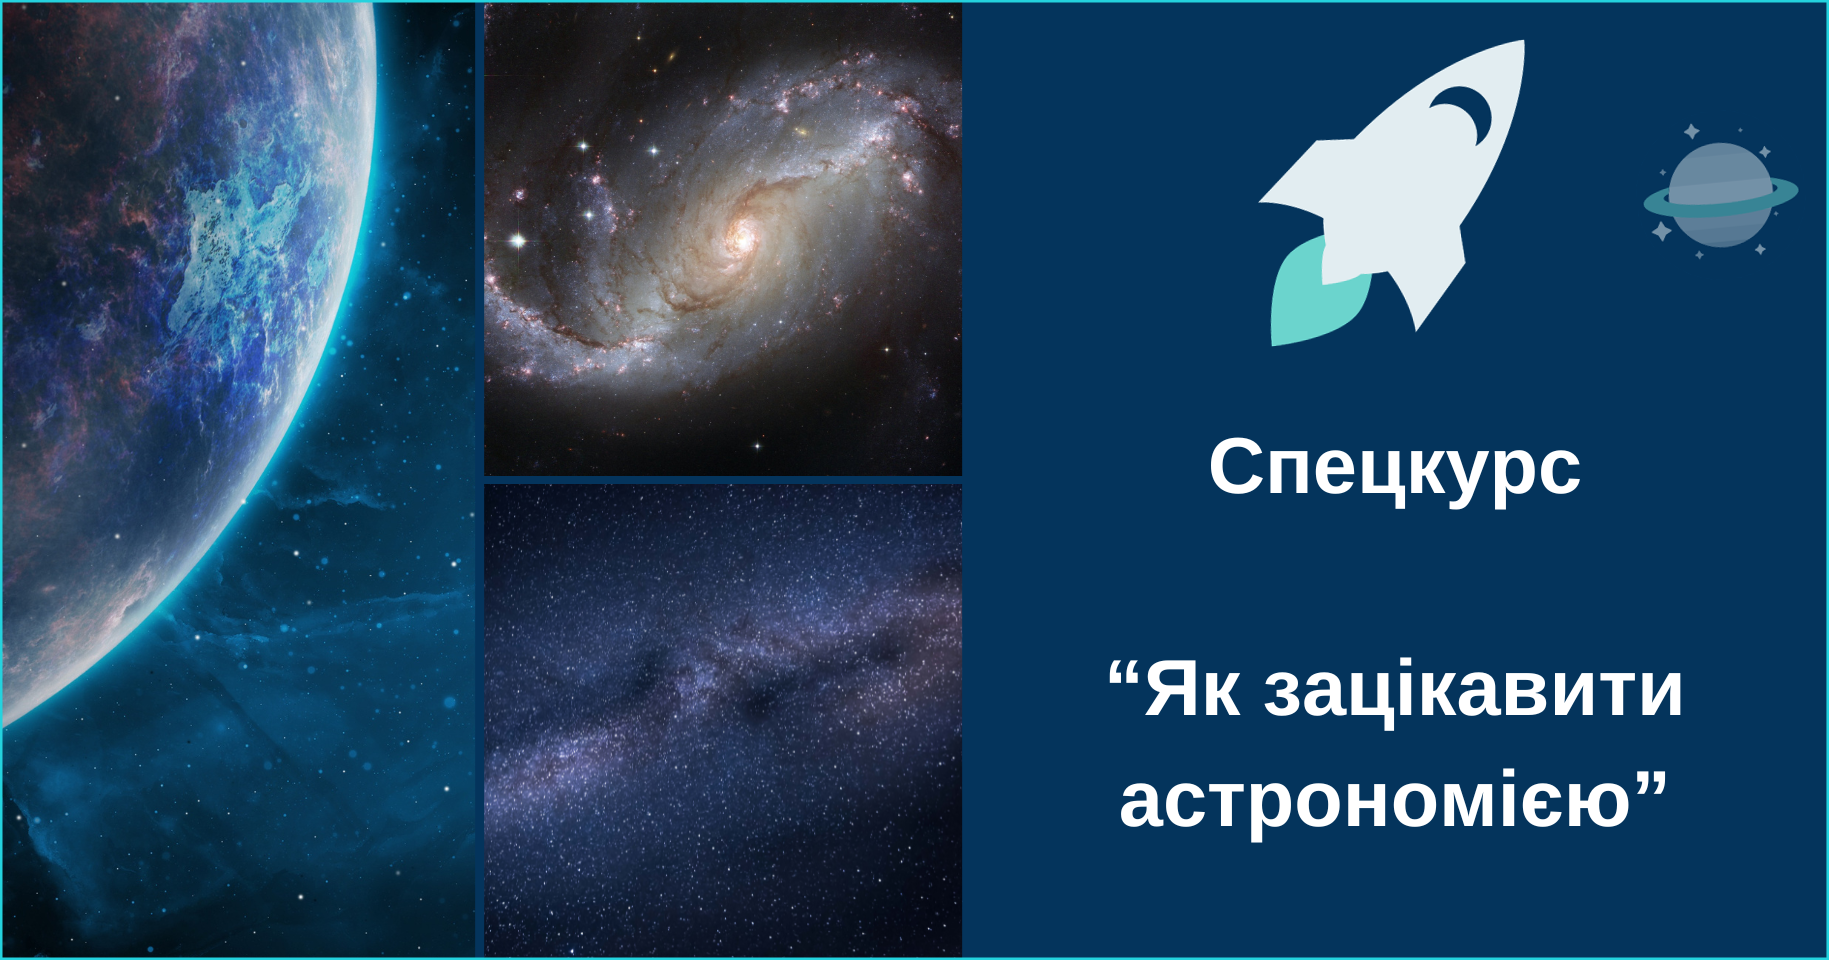 Спецкурс “Як зацікавити астрономією”